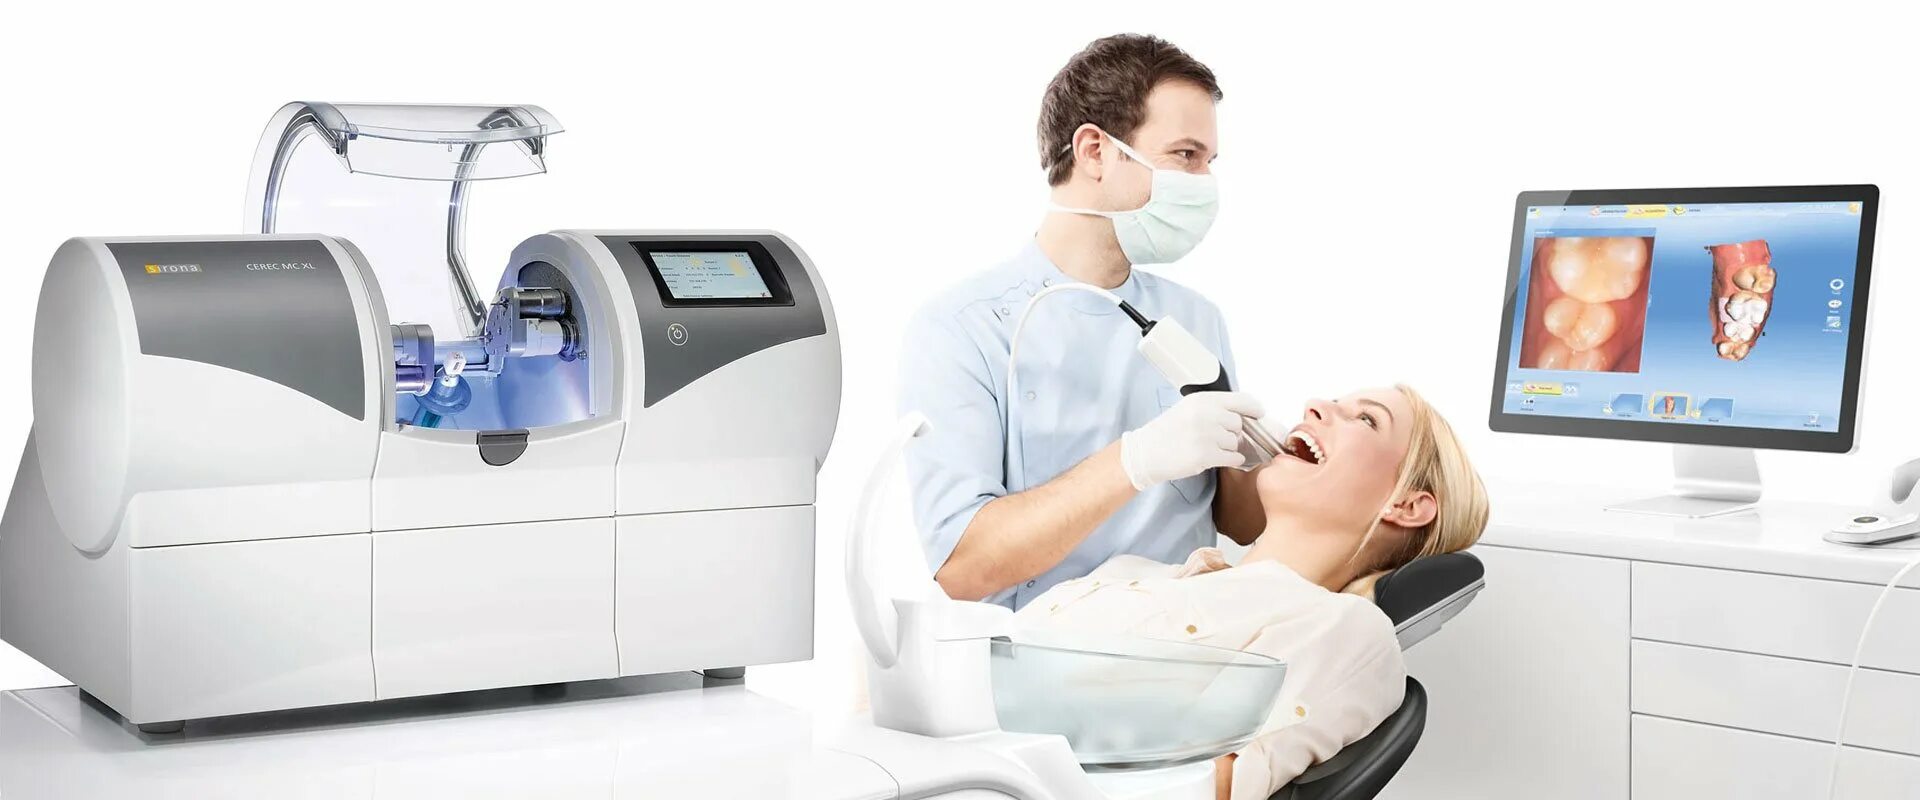 Ис кам. CAD cam технологии в ортопедической стоматологии. Технология церек в стоматологии. КАД Кам системы в стоматологии. Церек 3.